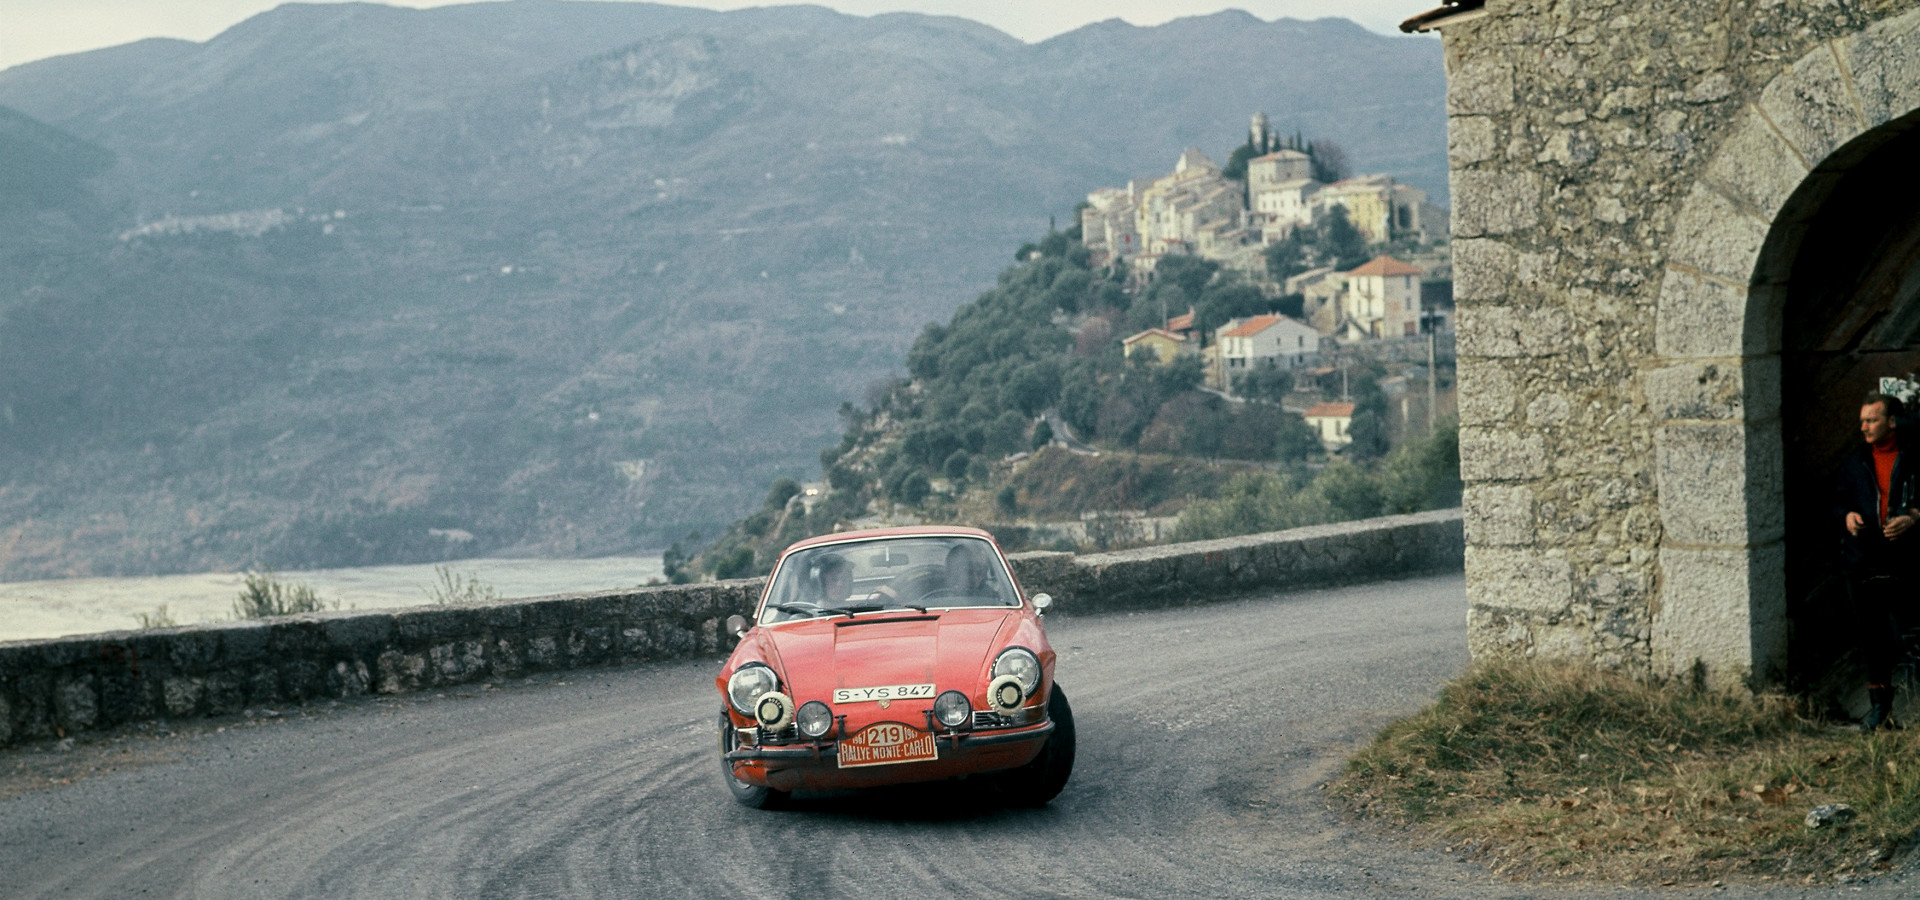 Porsche at the Monte Carlo Rally